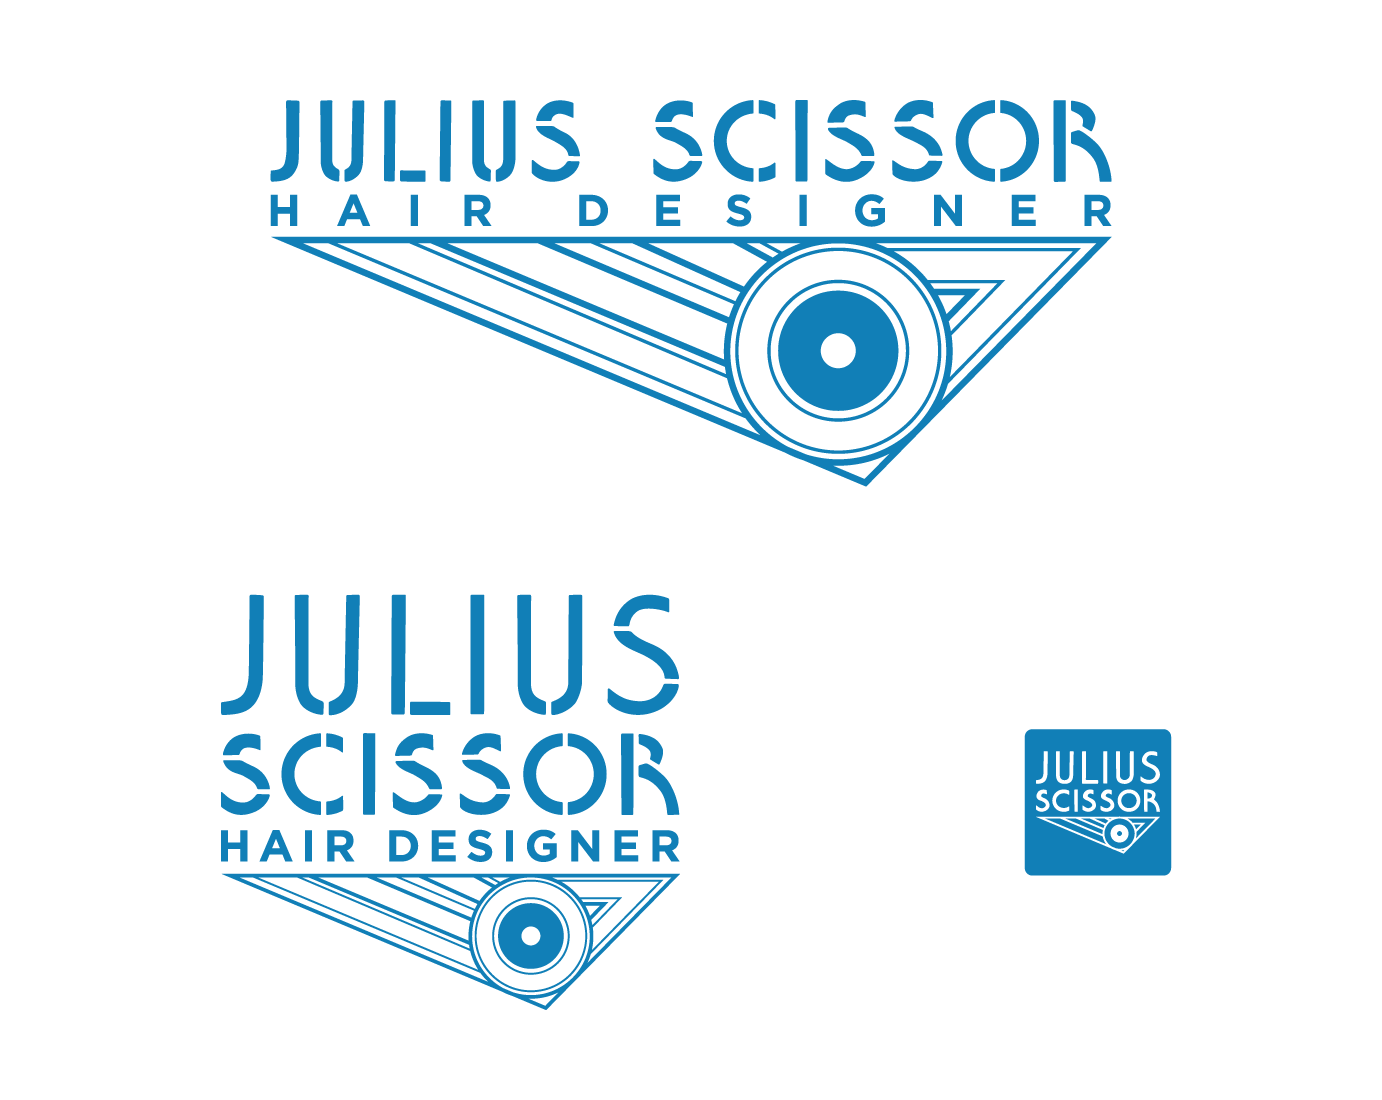 Julius Scissor Hair Designer